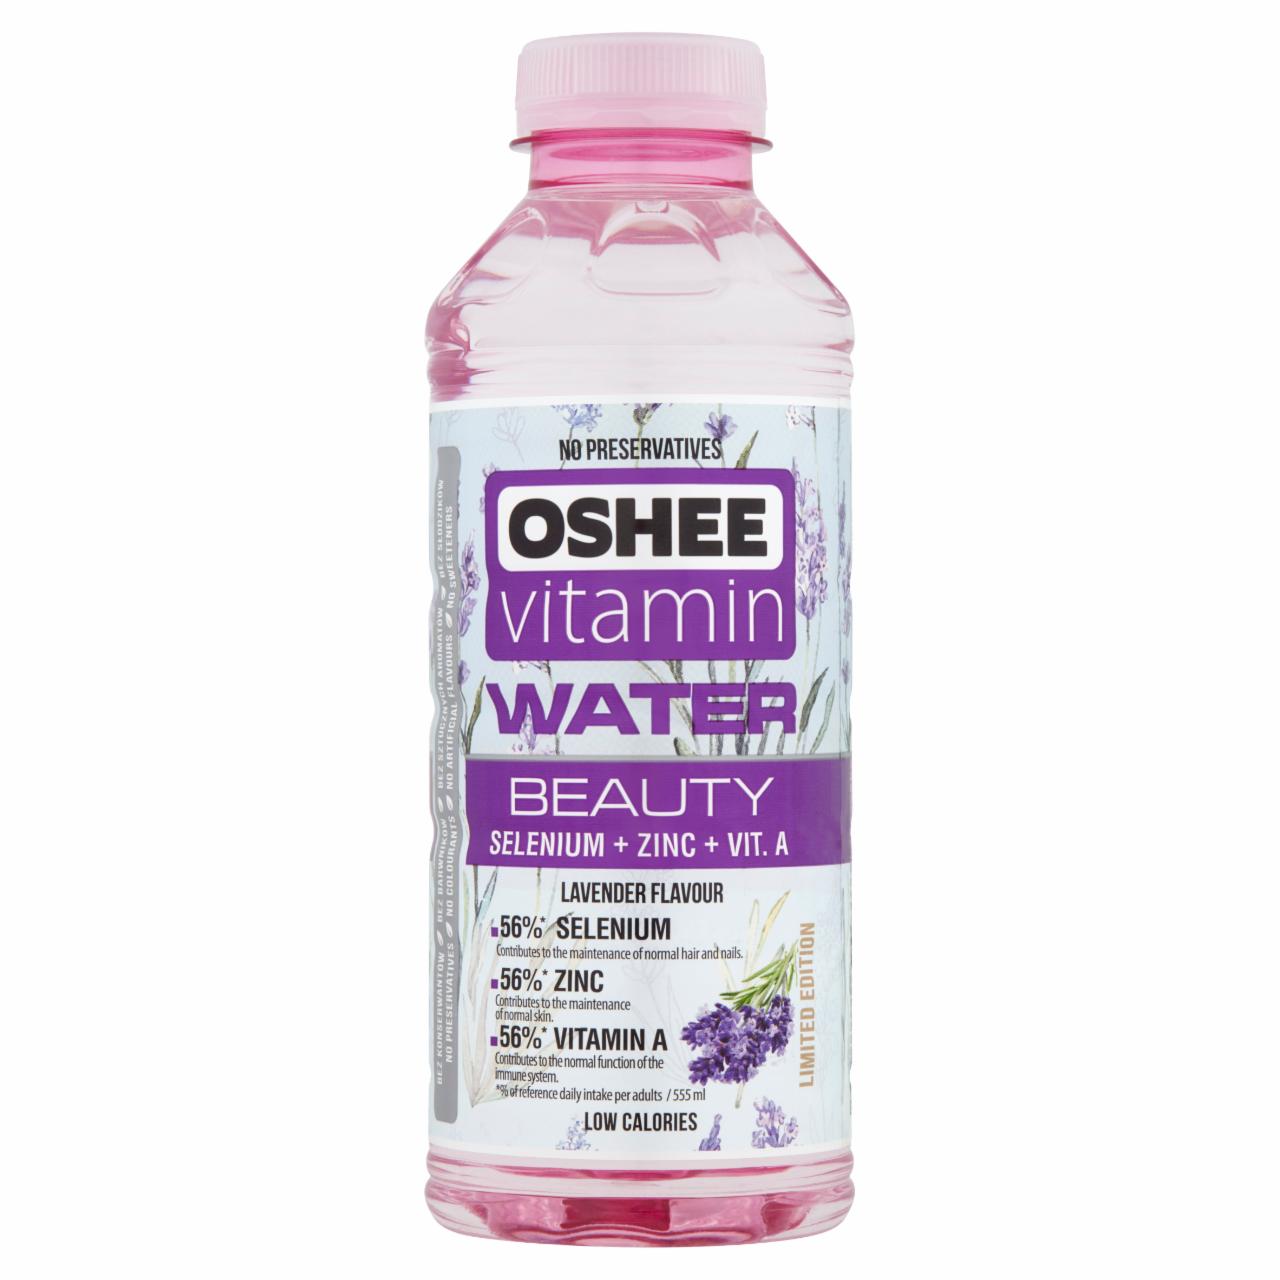 Képek - Oshee levendula ízesítésű szénsavmentes ital vitaminokkal, cinkkel és szelénnel 555 ml